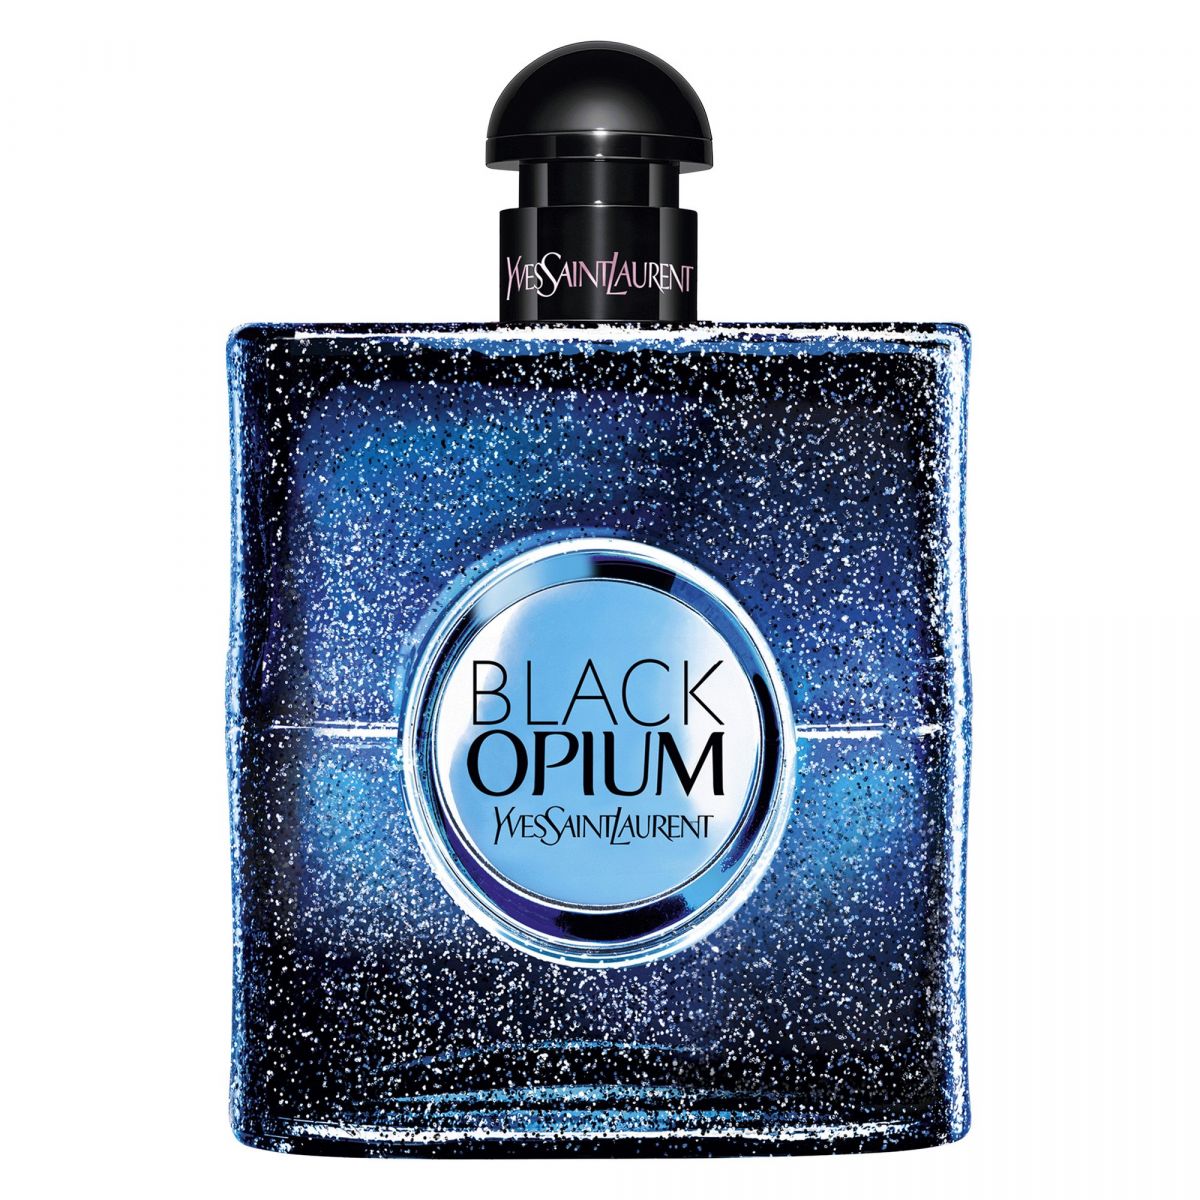 Yves Saint Laurent Black Opium Intense Eau De Parfum Spray 10ml - LookincredibleYves Saint Laurent3614272443716